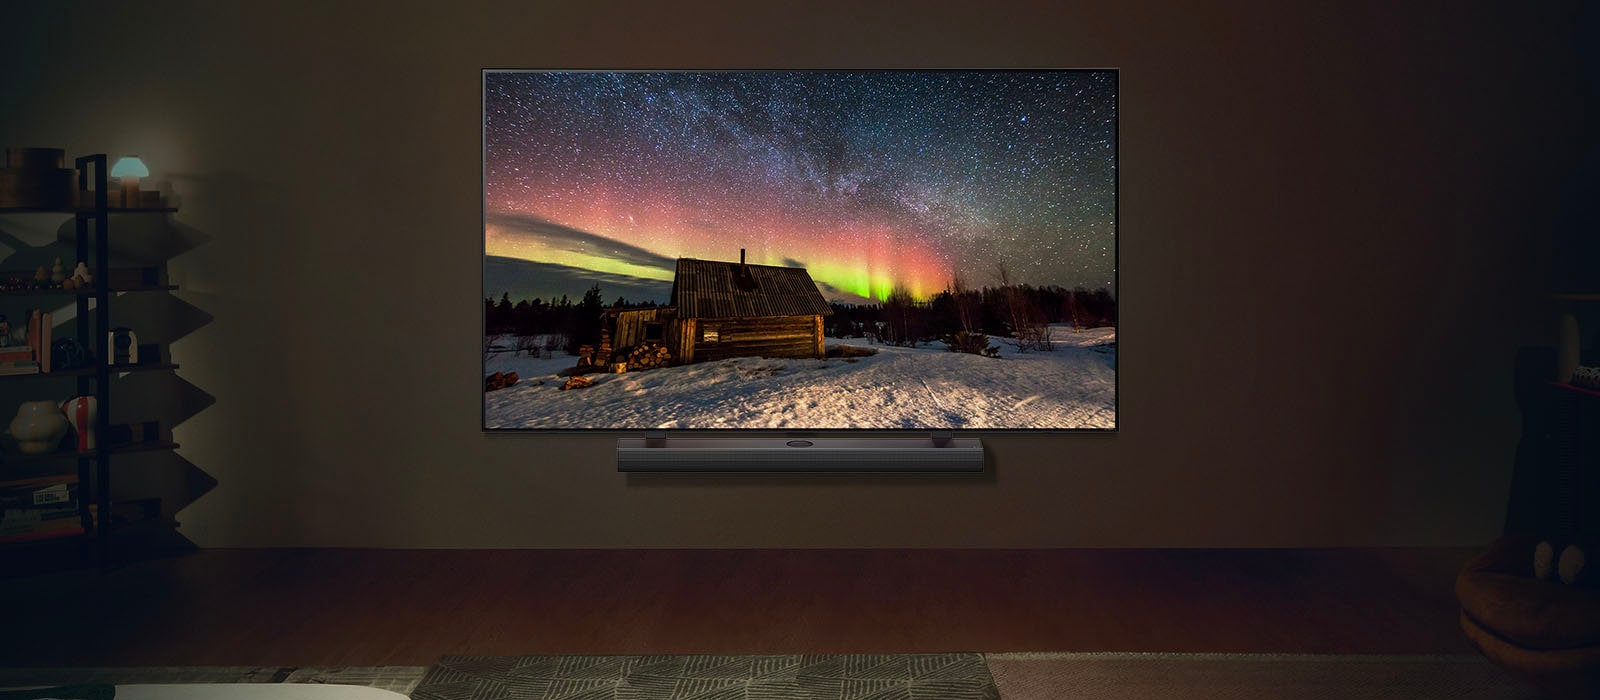 Изображение на LG телевизор и LG Soundbar в съвременен дом през нощта. На изображението се вижда полярното сияние с идеалното ниво на яркост.